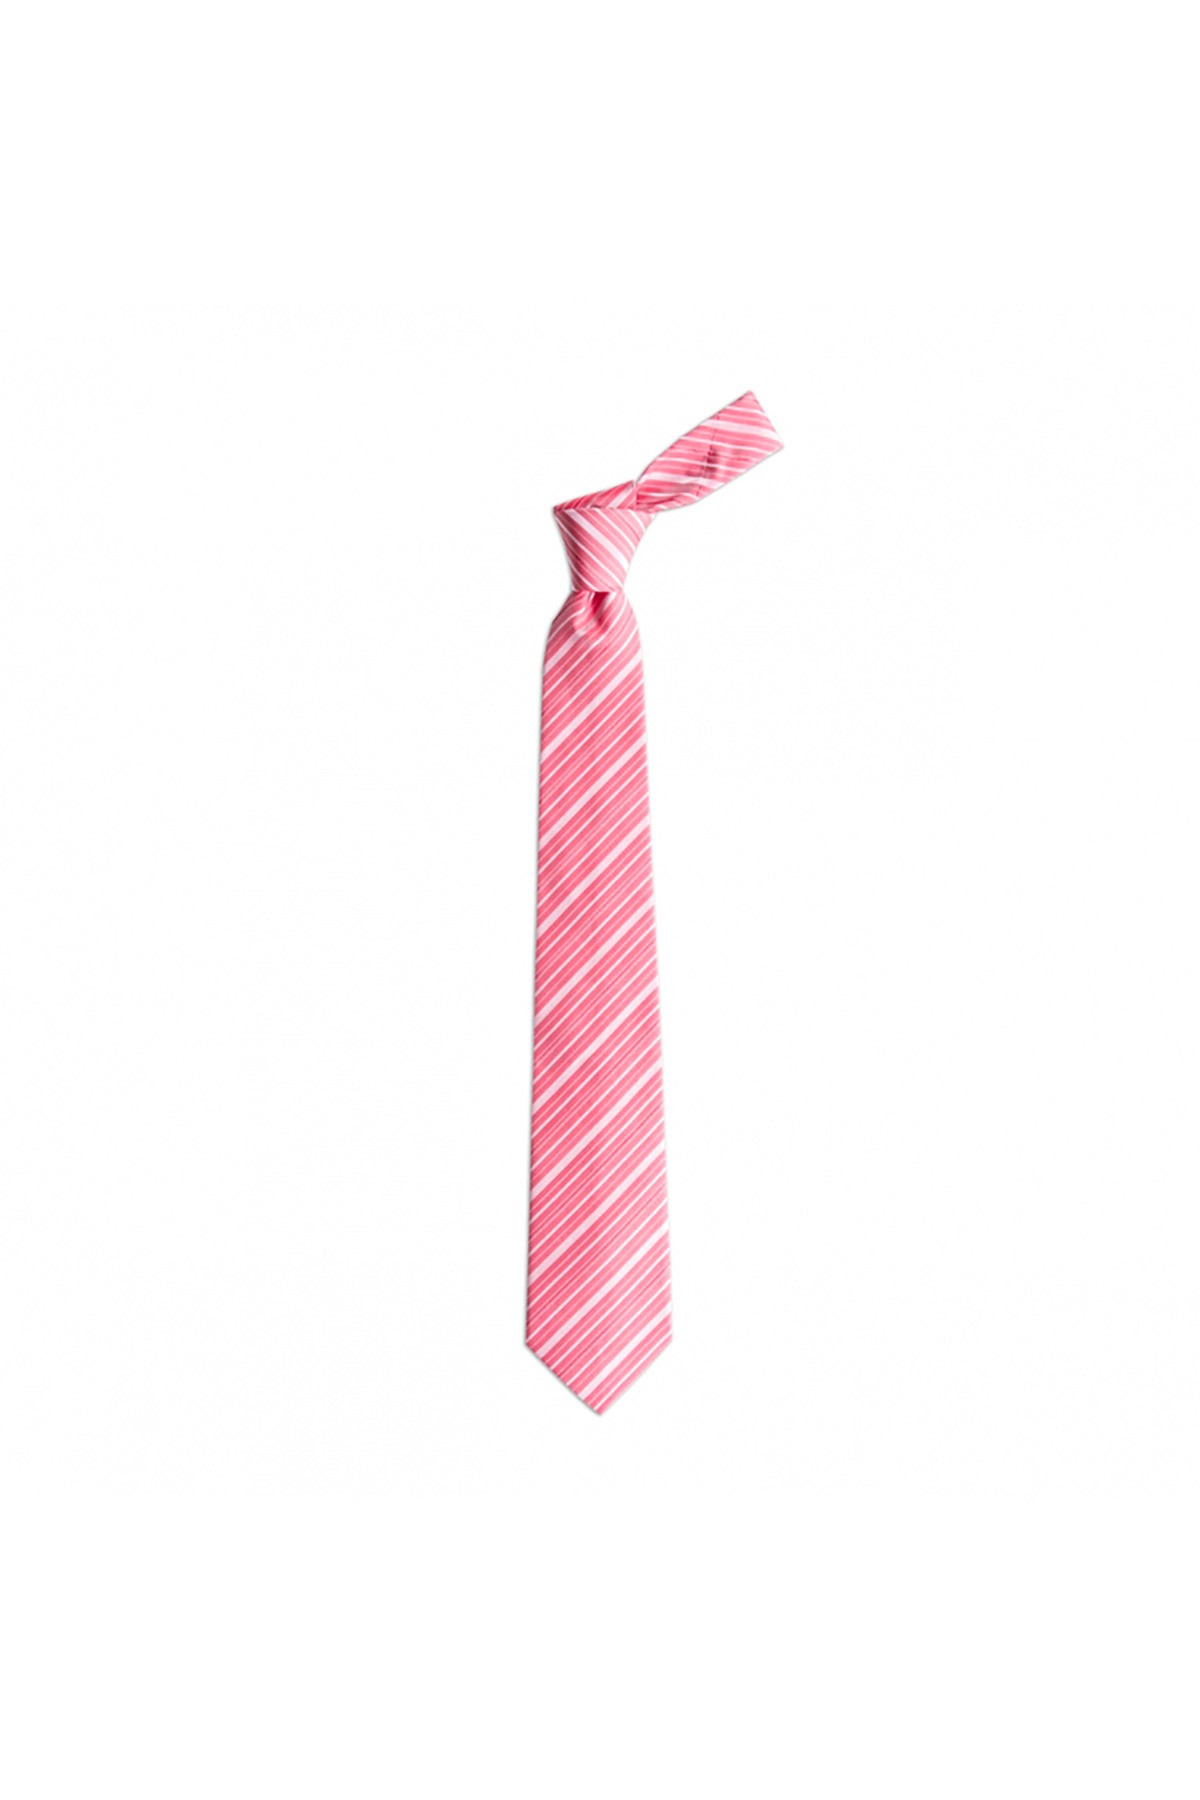 İnce çizgili 8 cm genişliğinde klasik ipek kravat - Somon